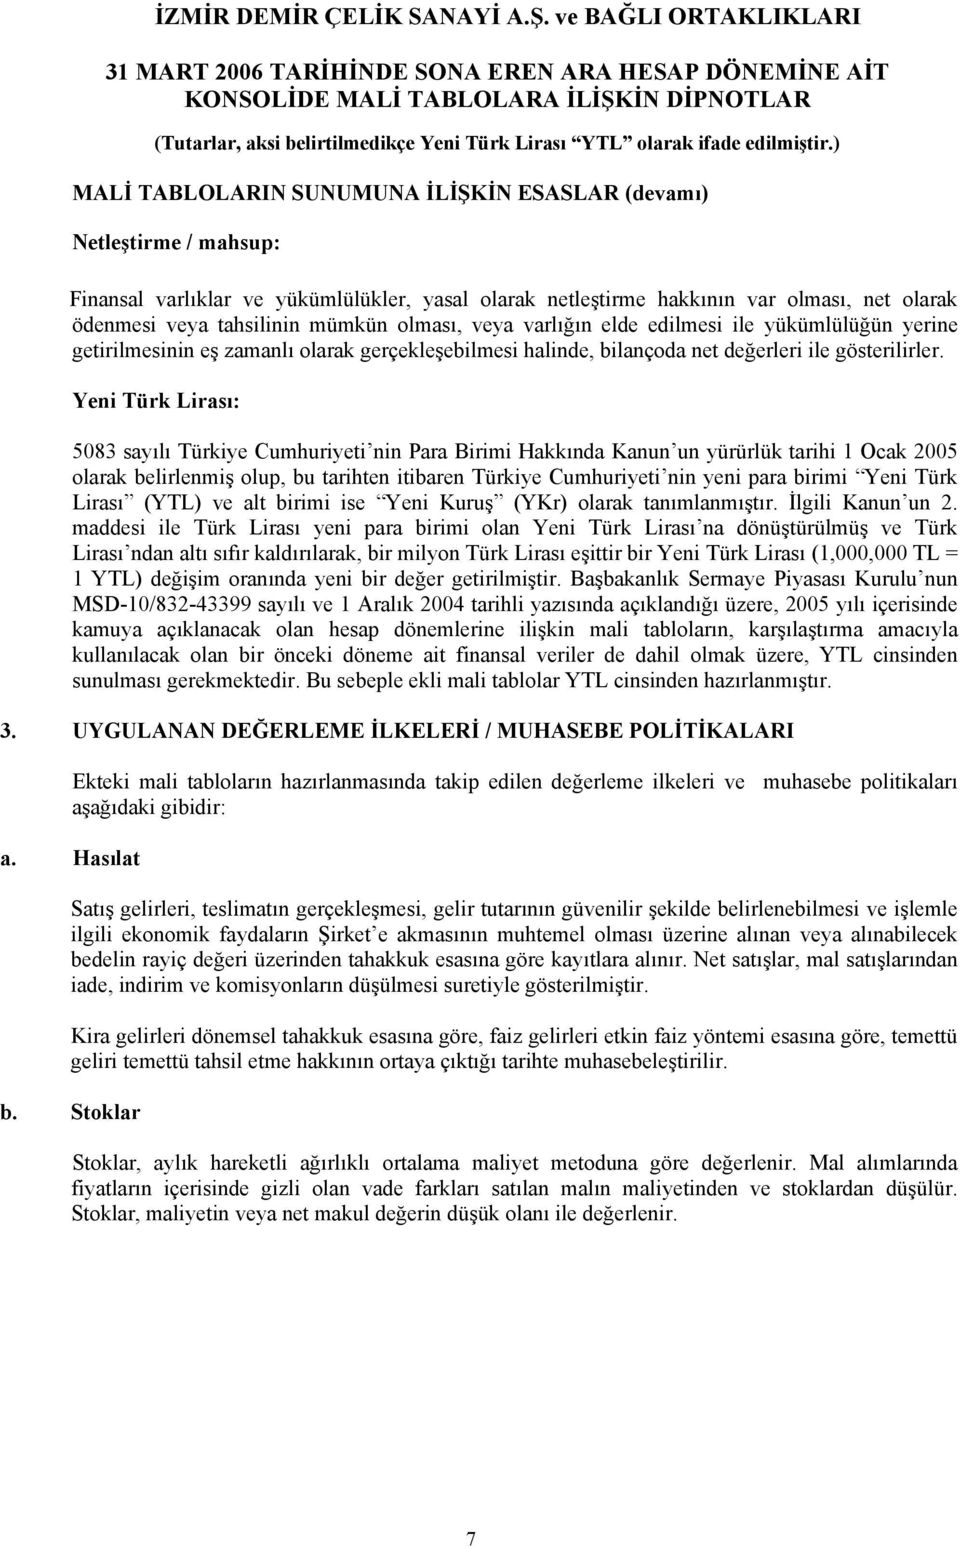 Yeni Türk Lirası: 5083 sayılı Türkiye Cumhuriyeti nin Para Birimi Hakkında Kanun un yürürlük tarihi 1 Ocak 2005 olarak belirlenmiş olup, bu tarihten itibaren Türkiye Cumhuriyeti nin yeni para birimi